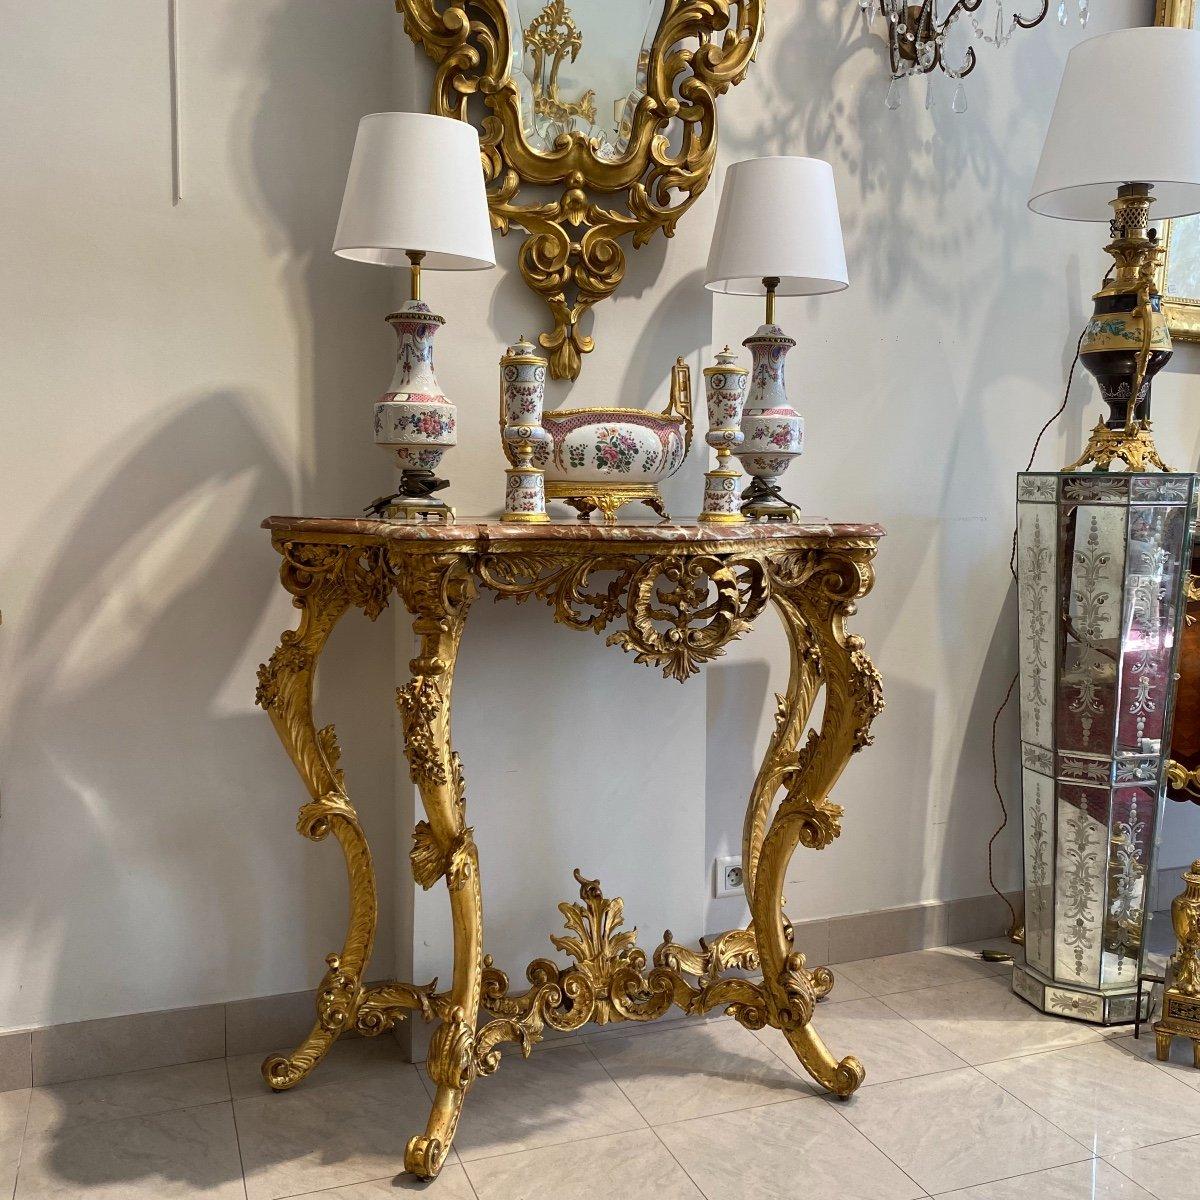 Wir präsentieren Ihnen diesen prächtigen Konsolentisch im Übergangsstil Louis XV aus der Zeit Napoleons III. Er ist aus vergoldetem Holz und wird von vier durch eine Bahre verbundenen Cabriole-Beinen getragen. Seine elegante Erscheinung wird durch